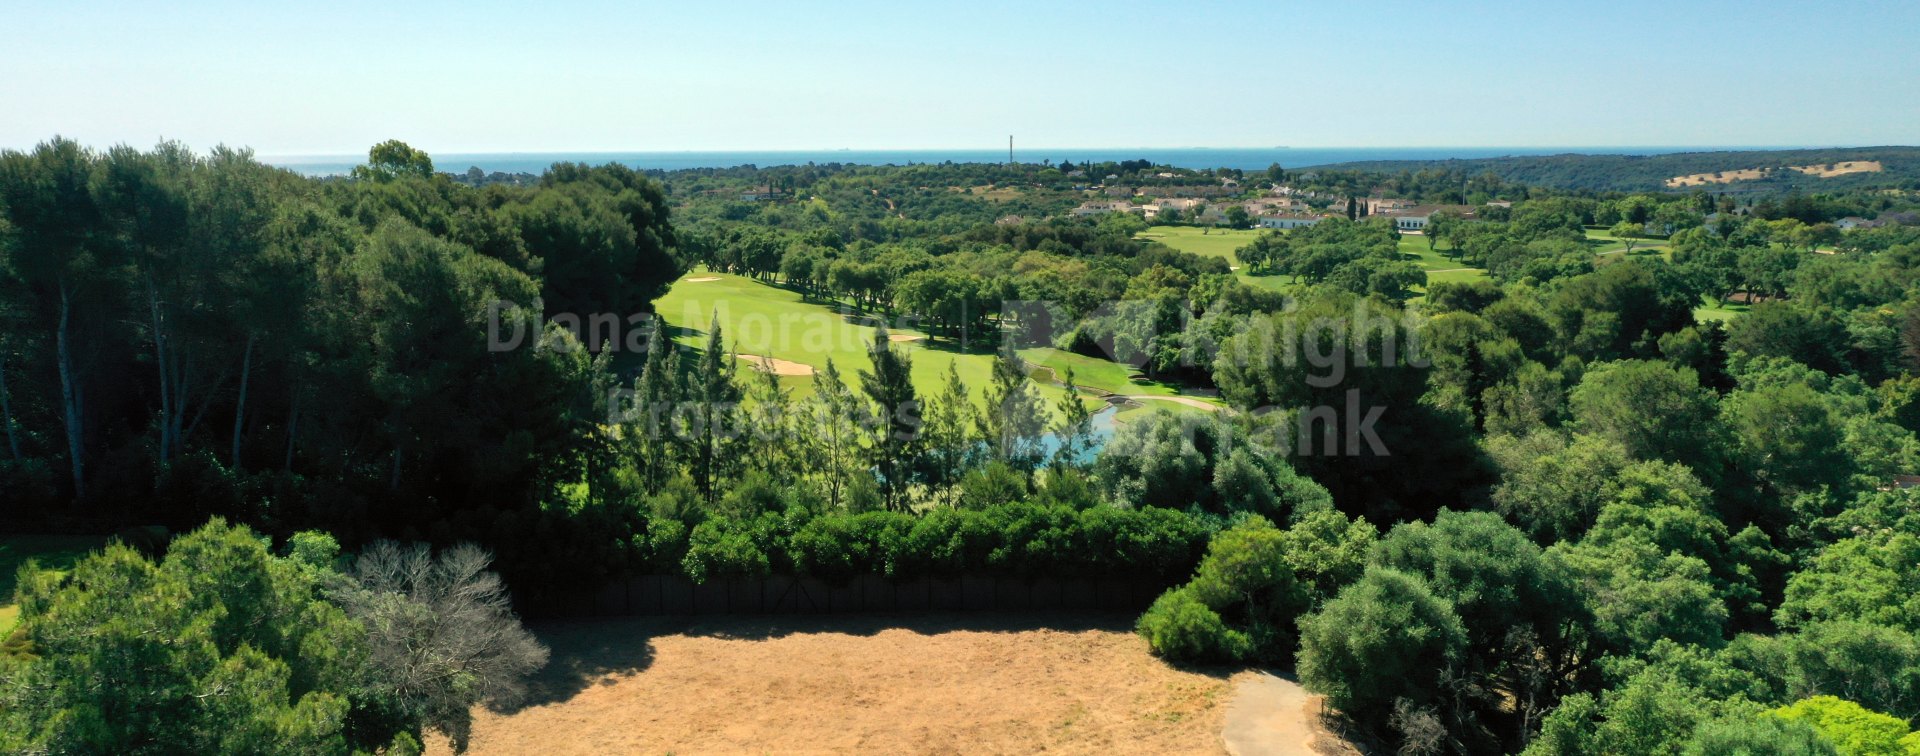 Sotogrande, Parcelas en primera línea de golf en venta en Valderrama